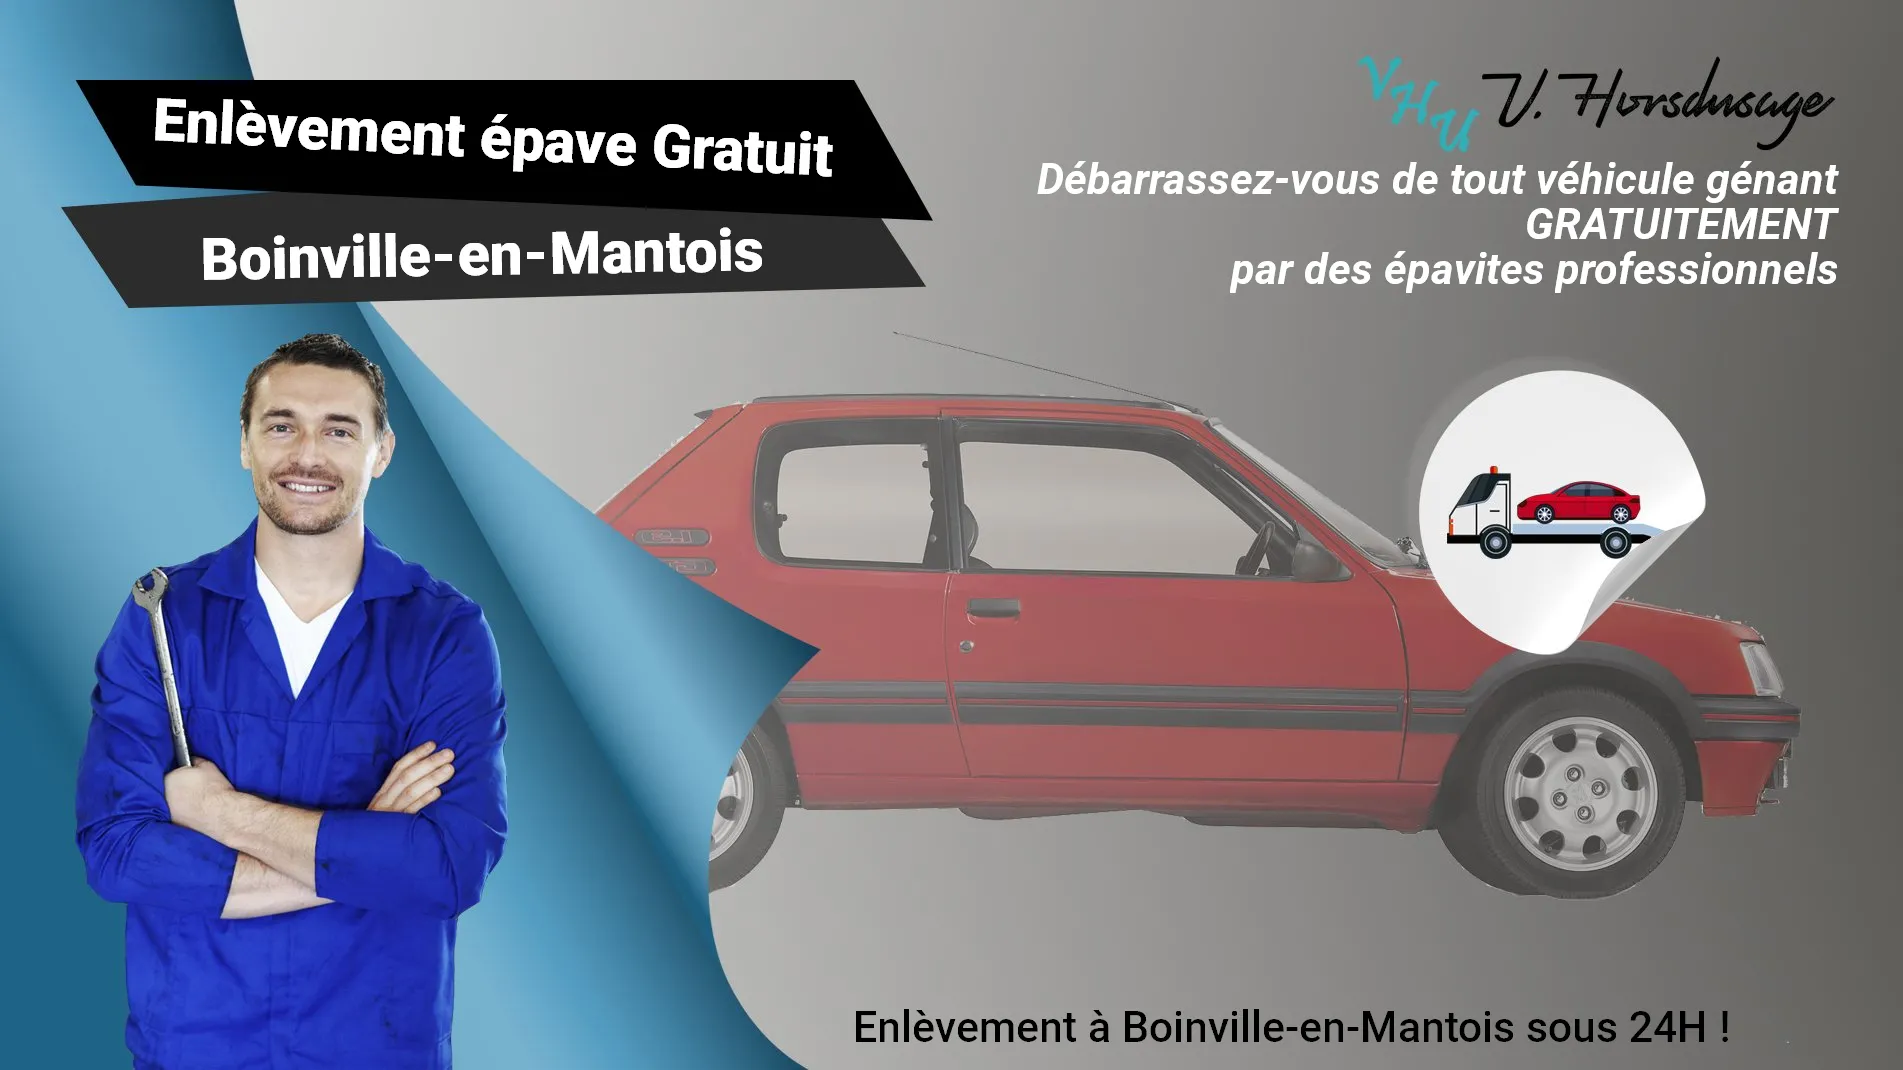 Pour un enlèvement gratuit à Boinville-en-Mantois, contactez nos épavistes agréé VHU